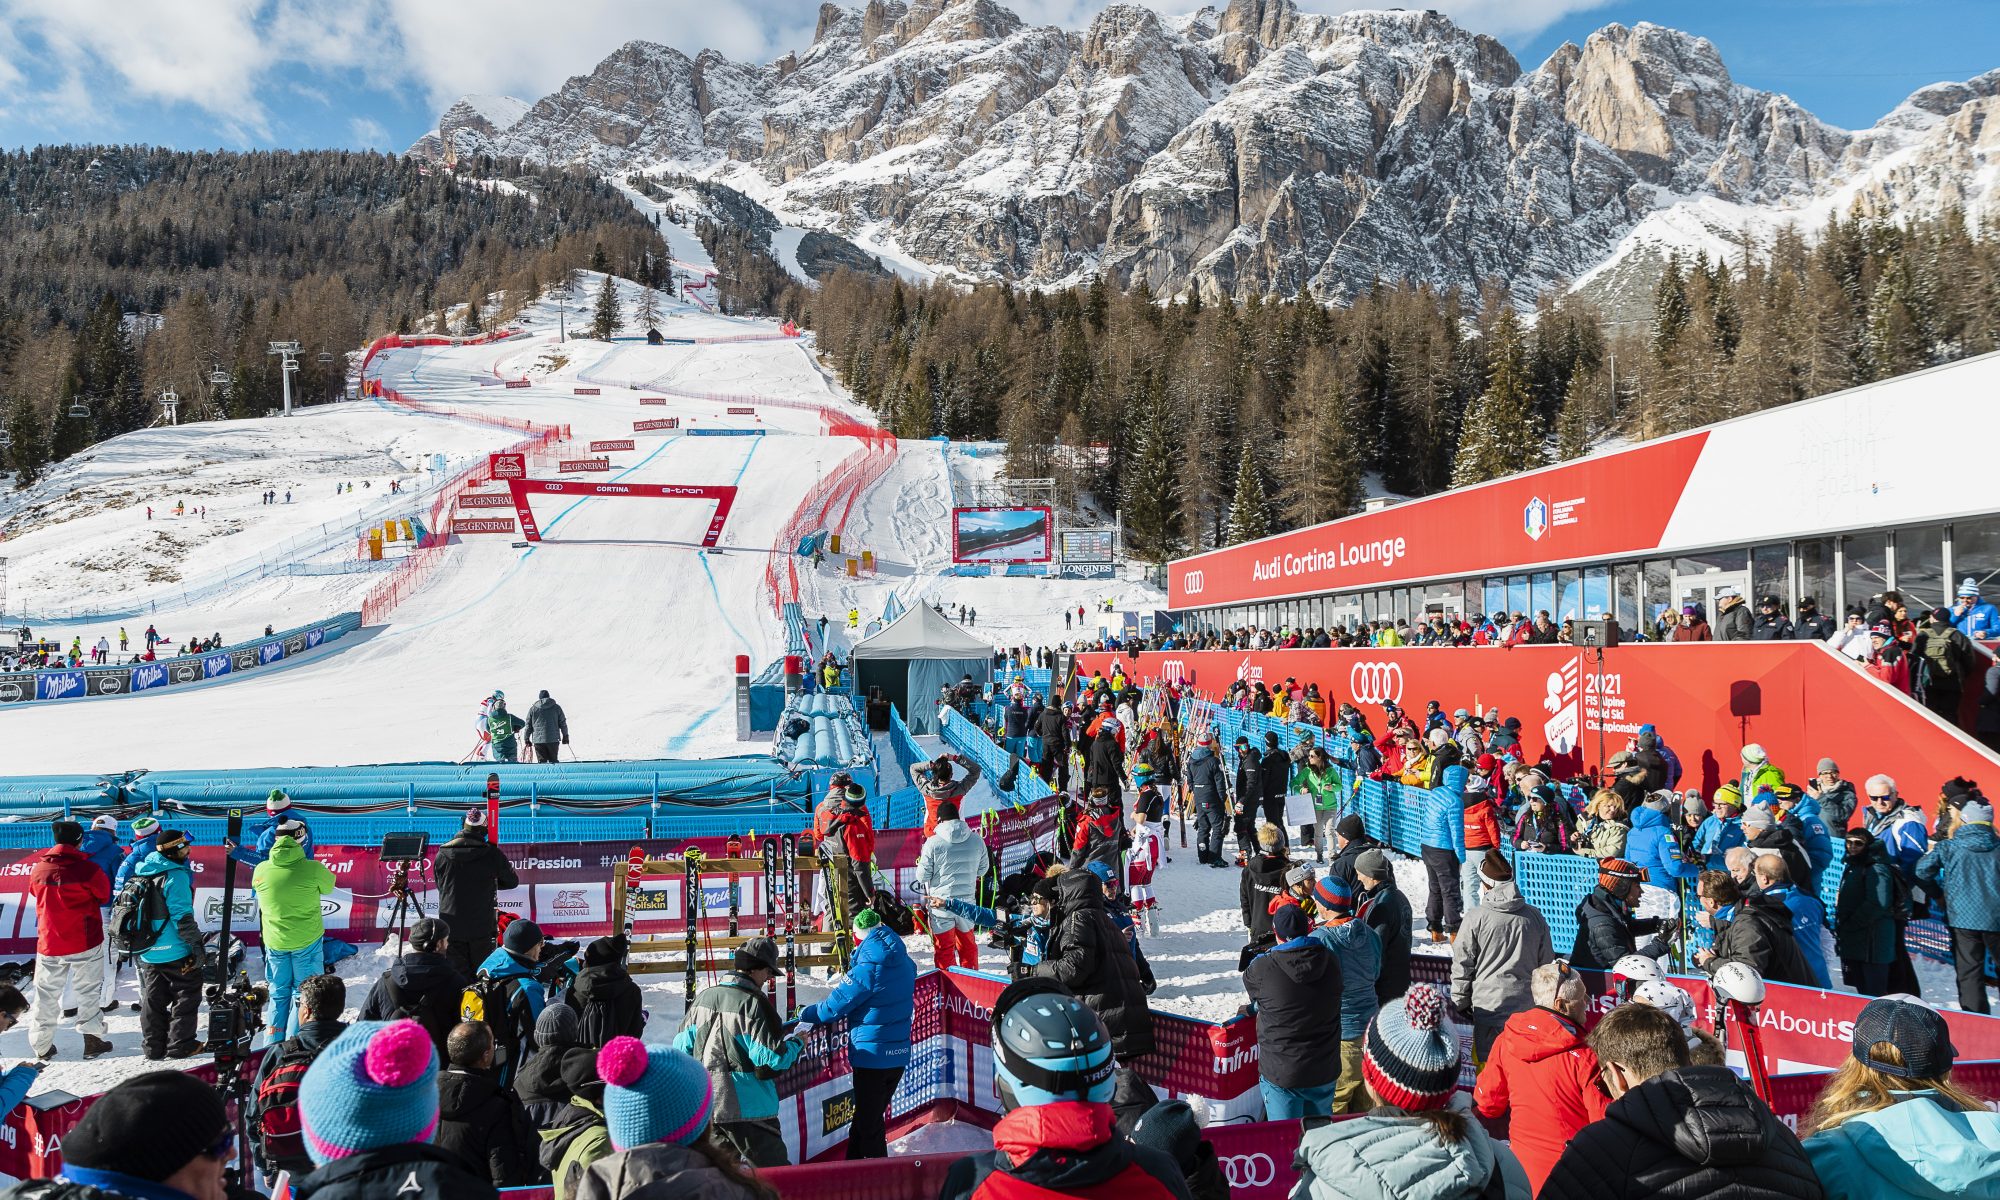 Tofana, ISTA. Cortina d'Ampezzo. Photo: www.bandion.com- 3. Cortina 2021 FIS Alpine World Ski Championships to go ahead.